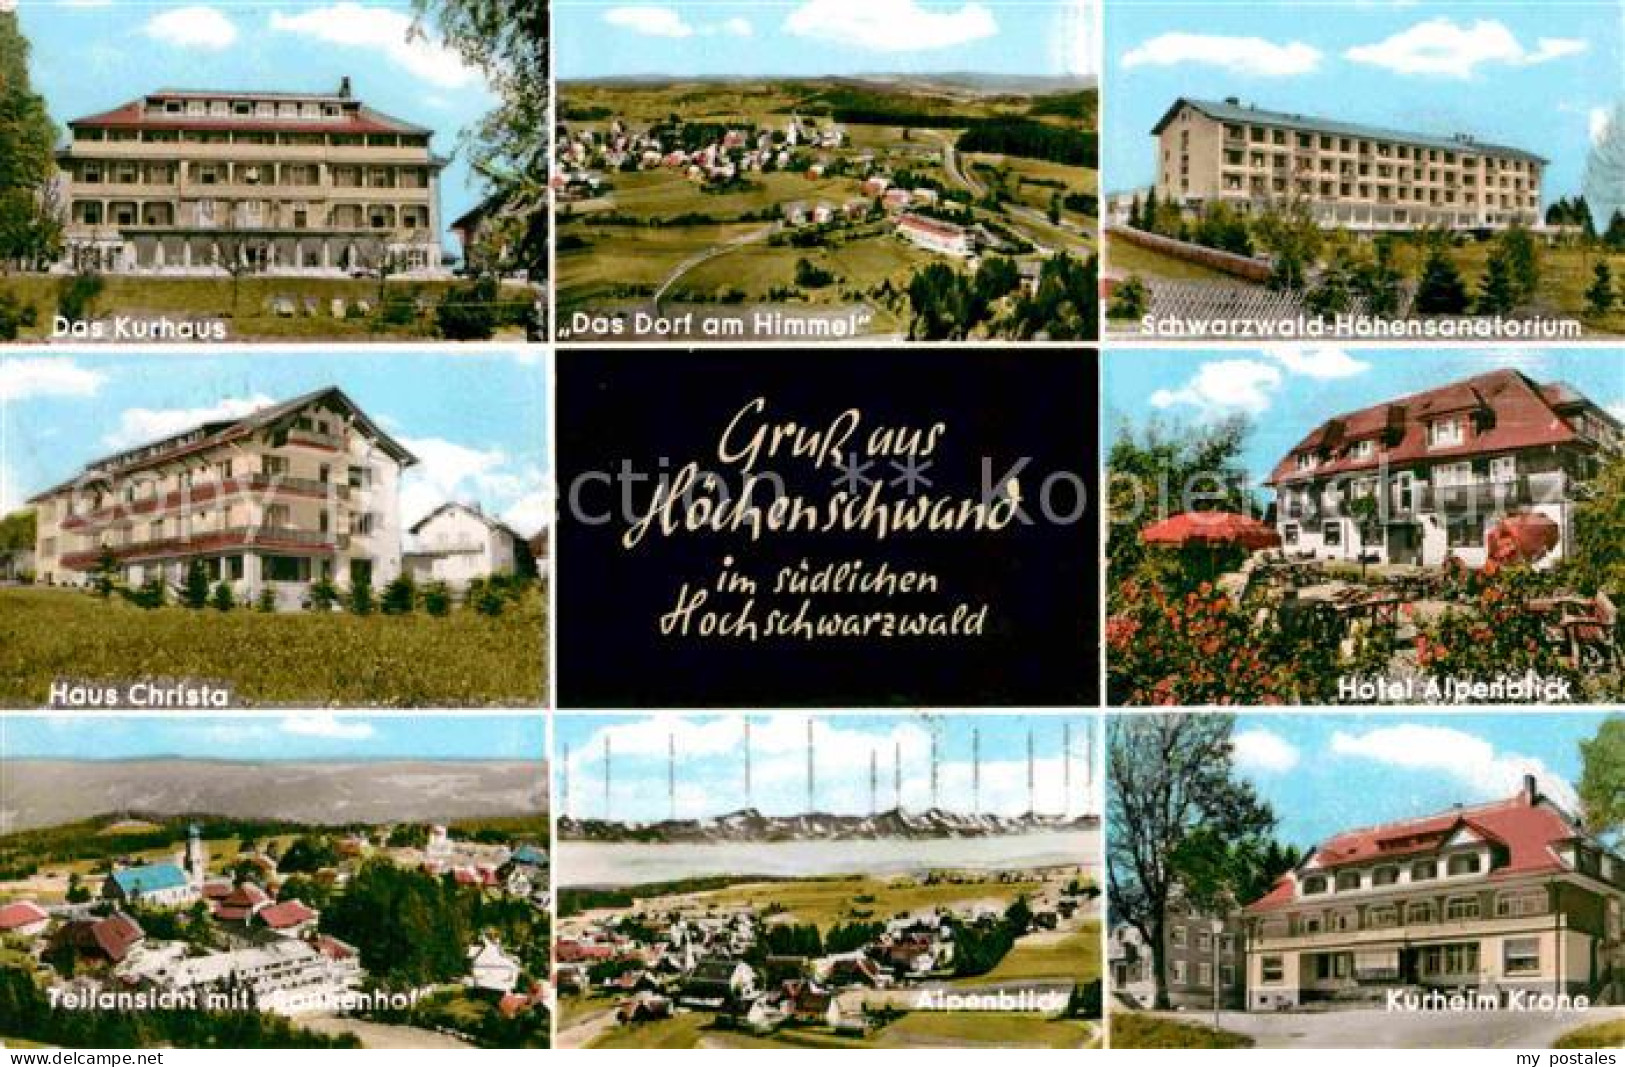 72617677 Hoechenschwand Schwarzwald-Hoehensanatorium Kurheim Krone Haus Christa  - Hoechenschwand